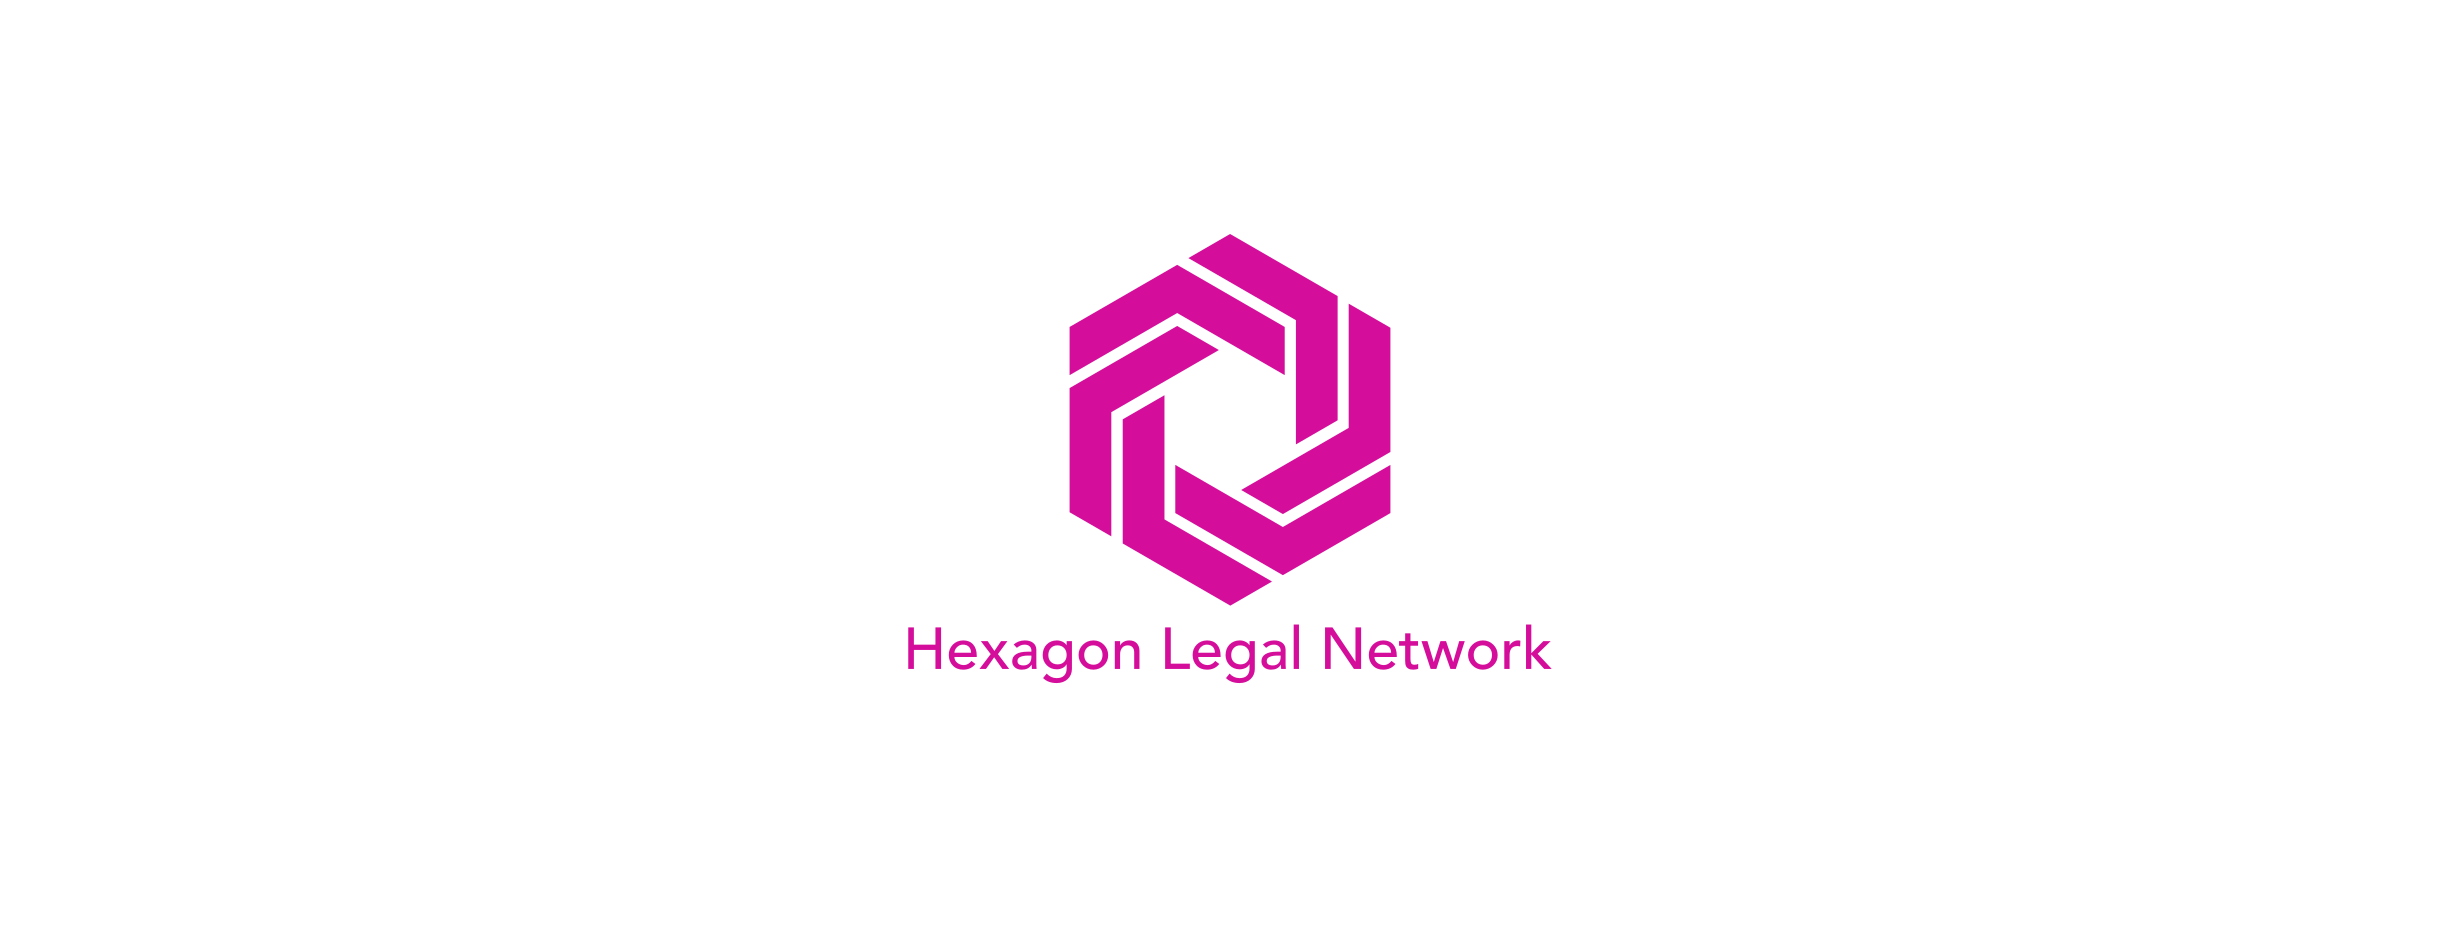 Hexagon Legal Network